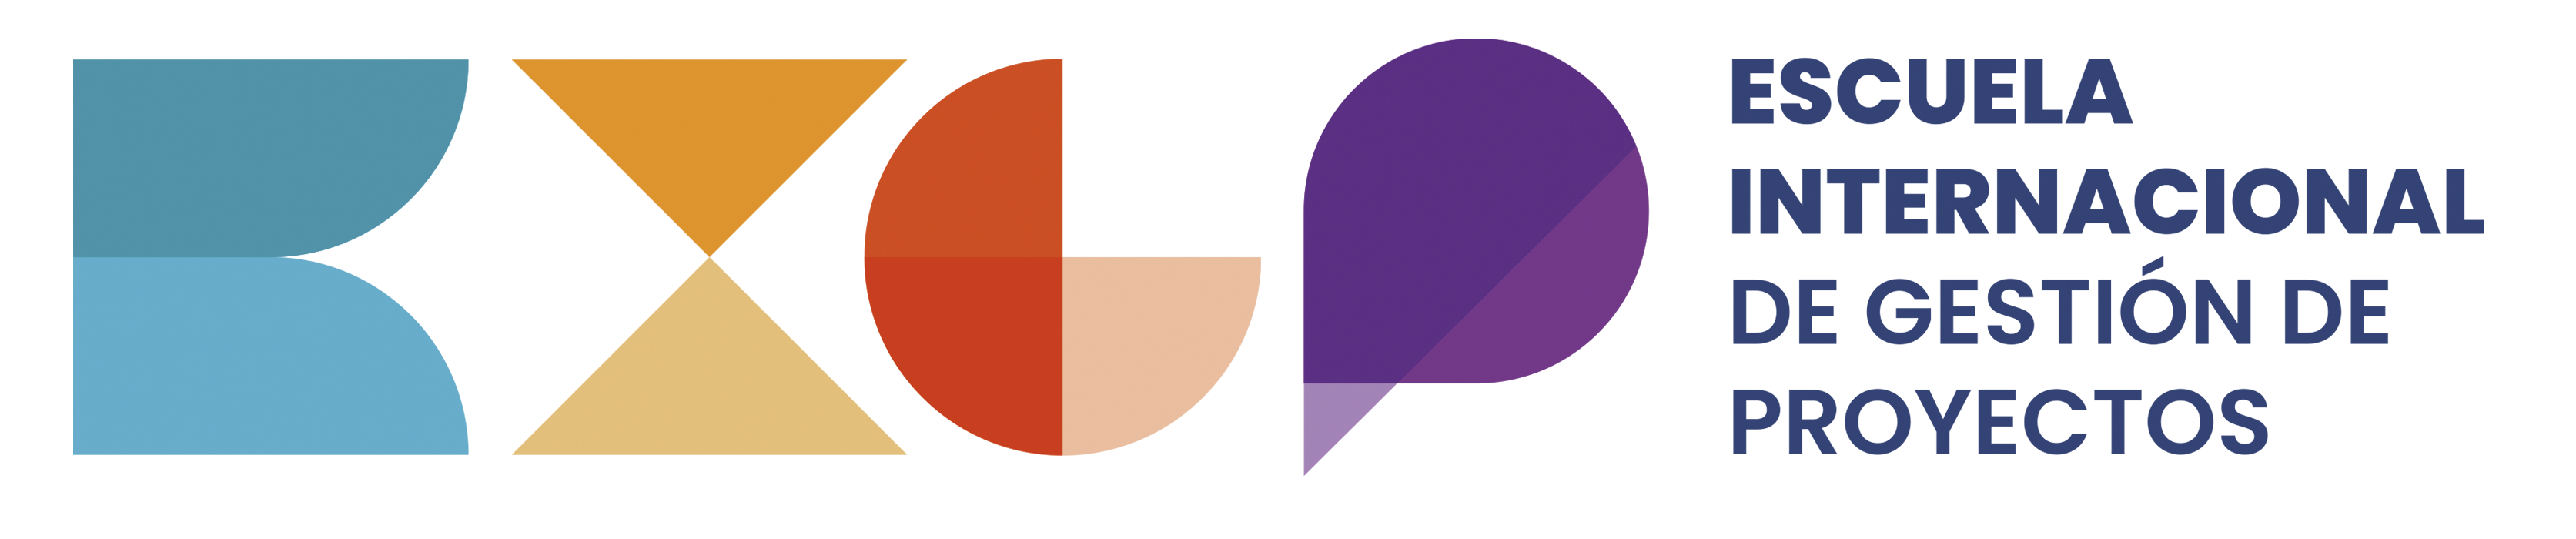 logo EIGP PMI 2021